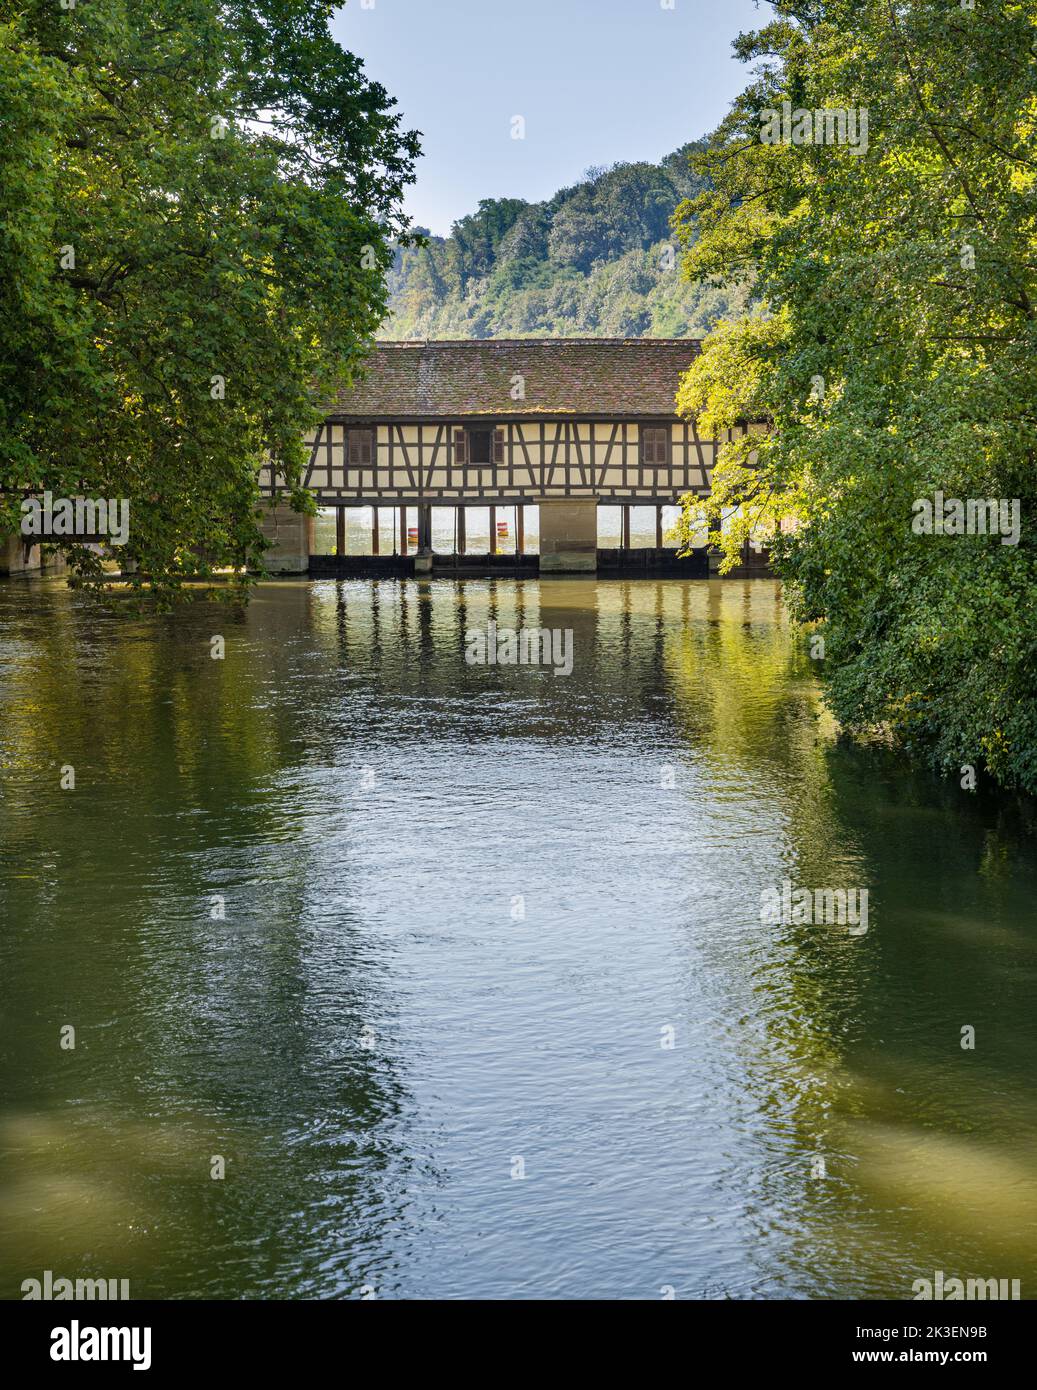 Historic Truss Bridge (Water house) on the Neckar river, Esslingen, Baden-Württemberg, Germany Stock Photo